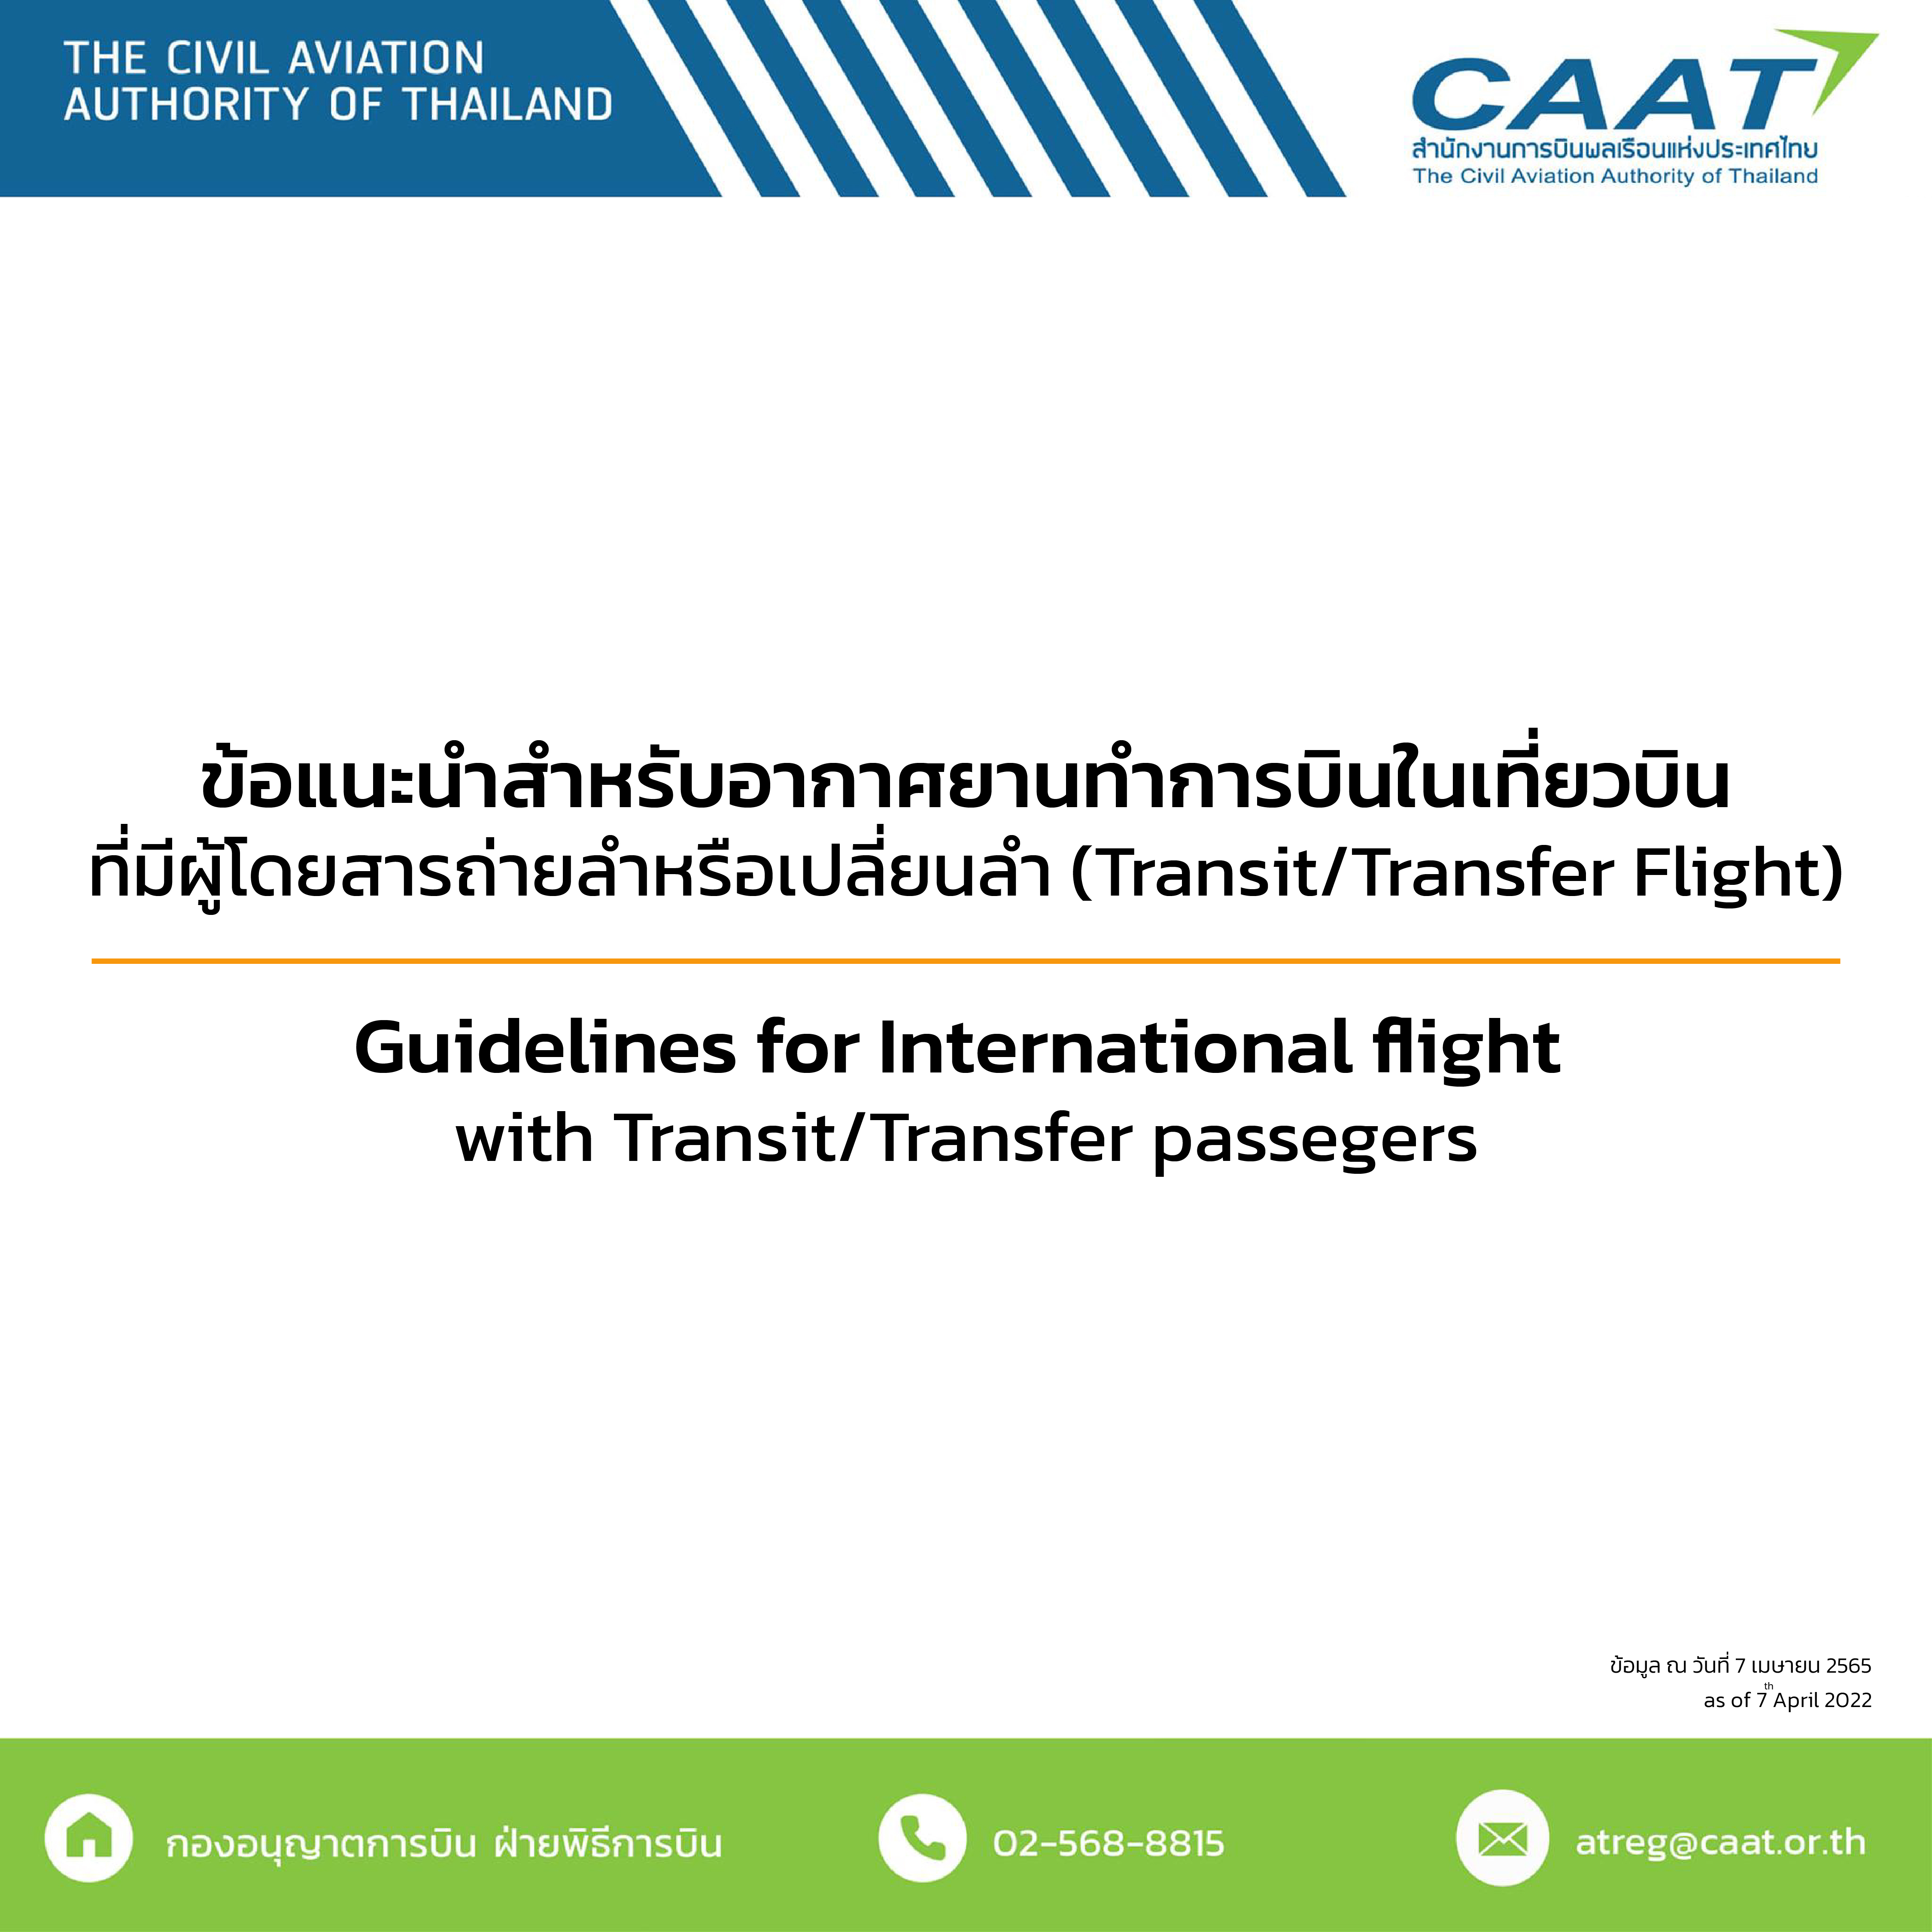 ข้อแนะนำสำหรับอากาศยานทำการบินในเที่ยวบินที่มีผู้โดยสารถ่ายลำหรือเปลี่ยนลำ(Transit/Transfer Flight)